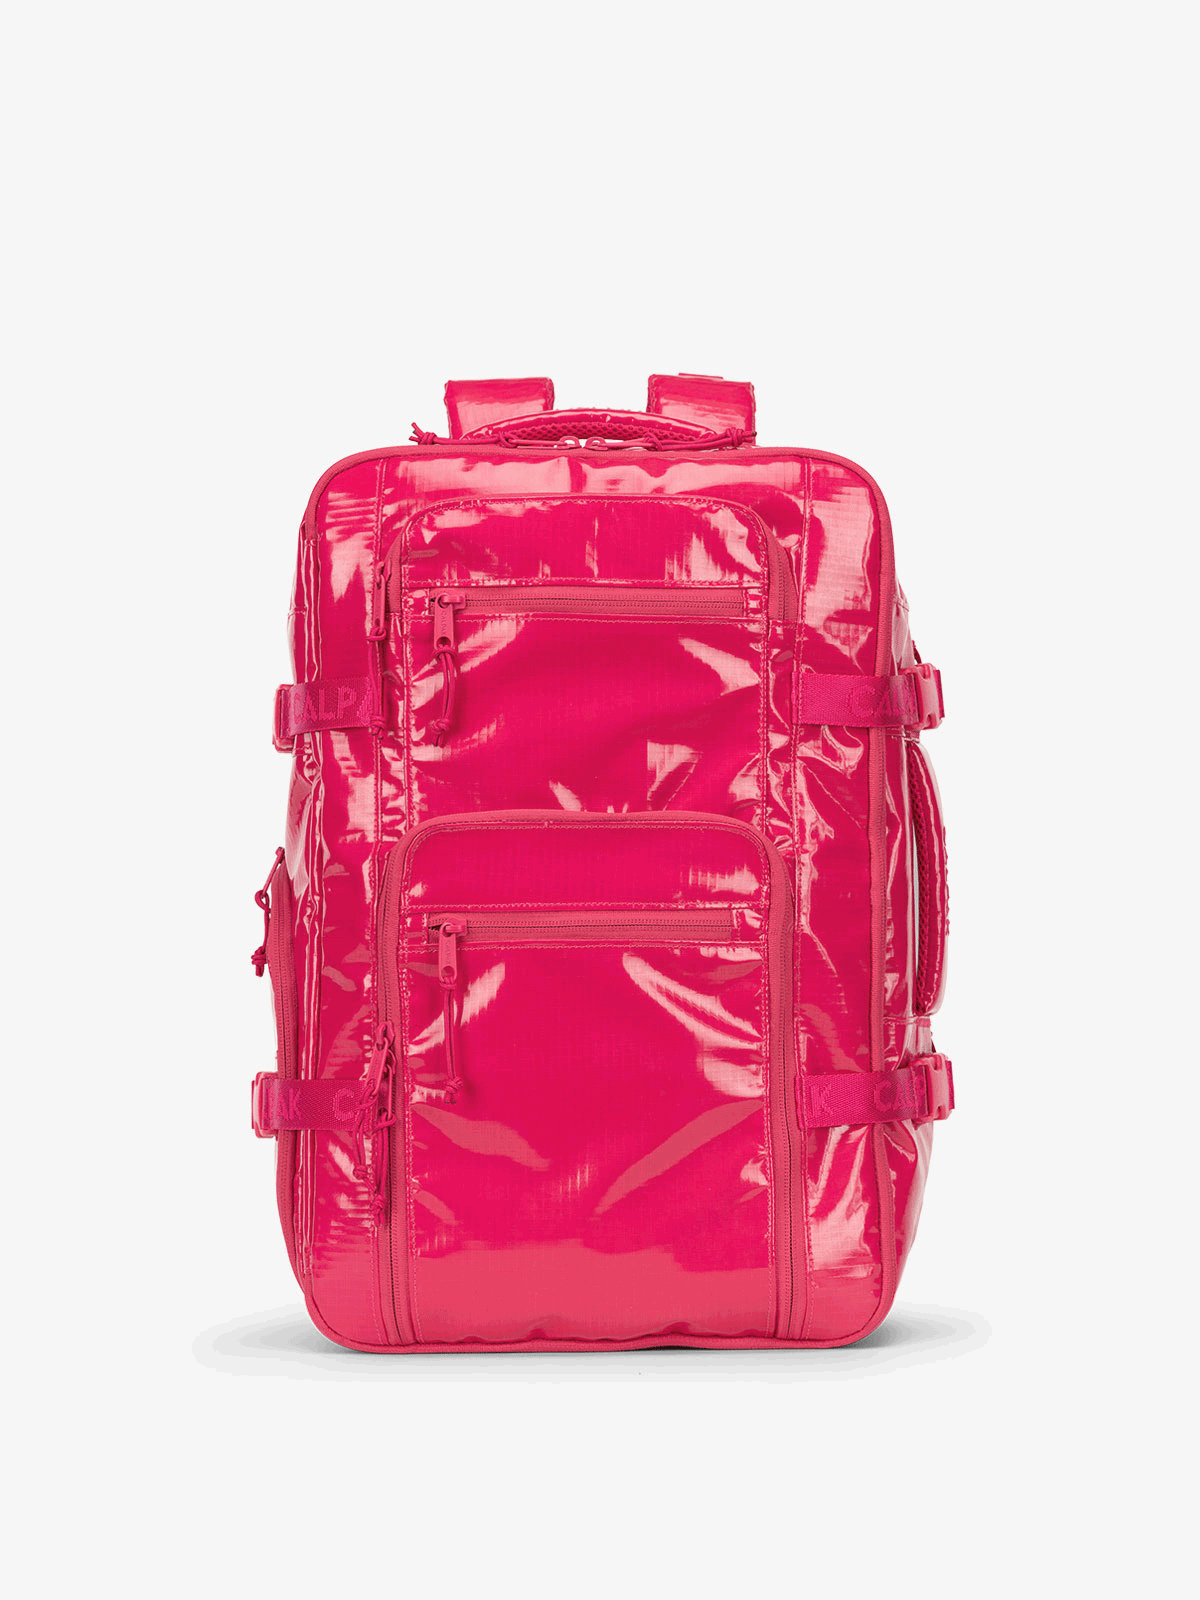 CALPAK Terra 26L Laptop Backpack and Duffel Bag 360 view in pink dragonfruit